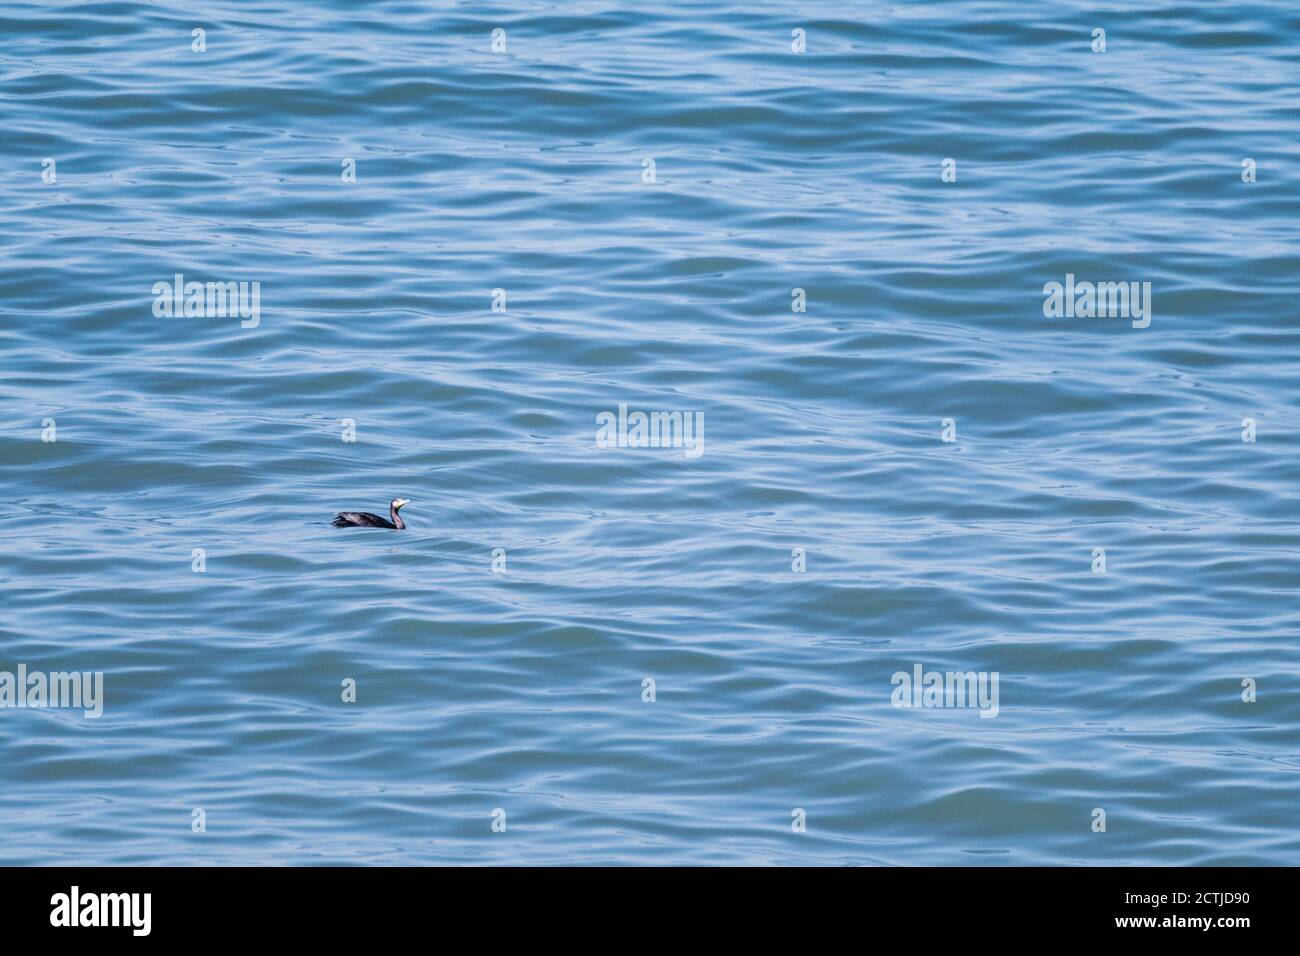 Meerwasser Nahaufnahme Textur mit kleinen schwarzen Vogel schwimmen auf Wellen Stockfoto